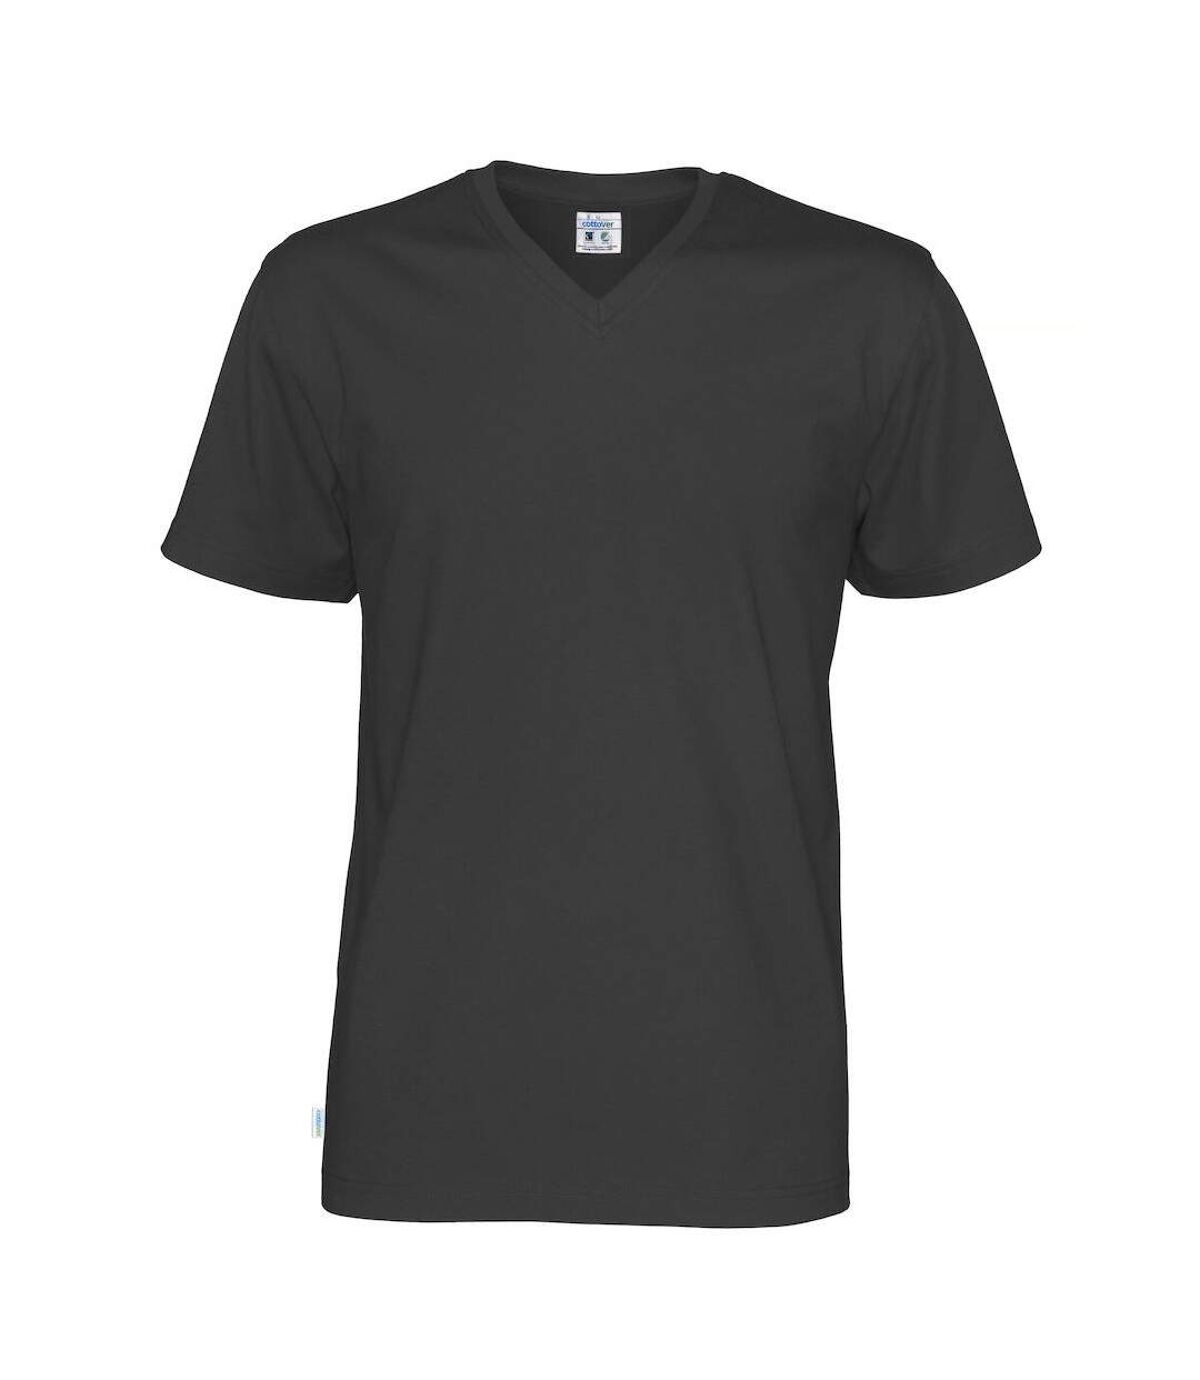 Cottover - T-shirt - Homme (Noir) - UTUB680